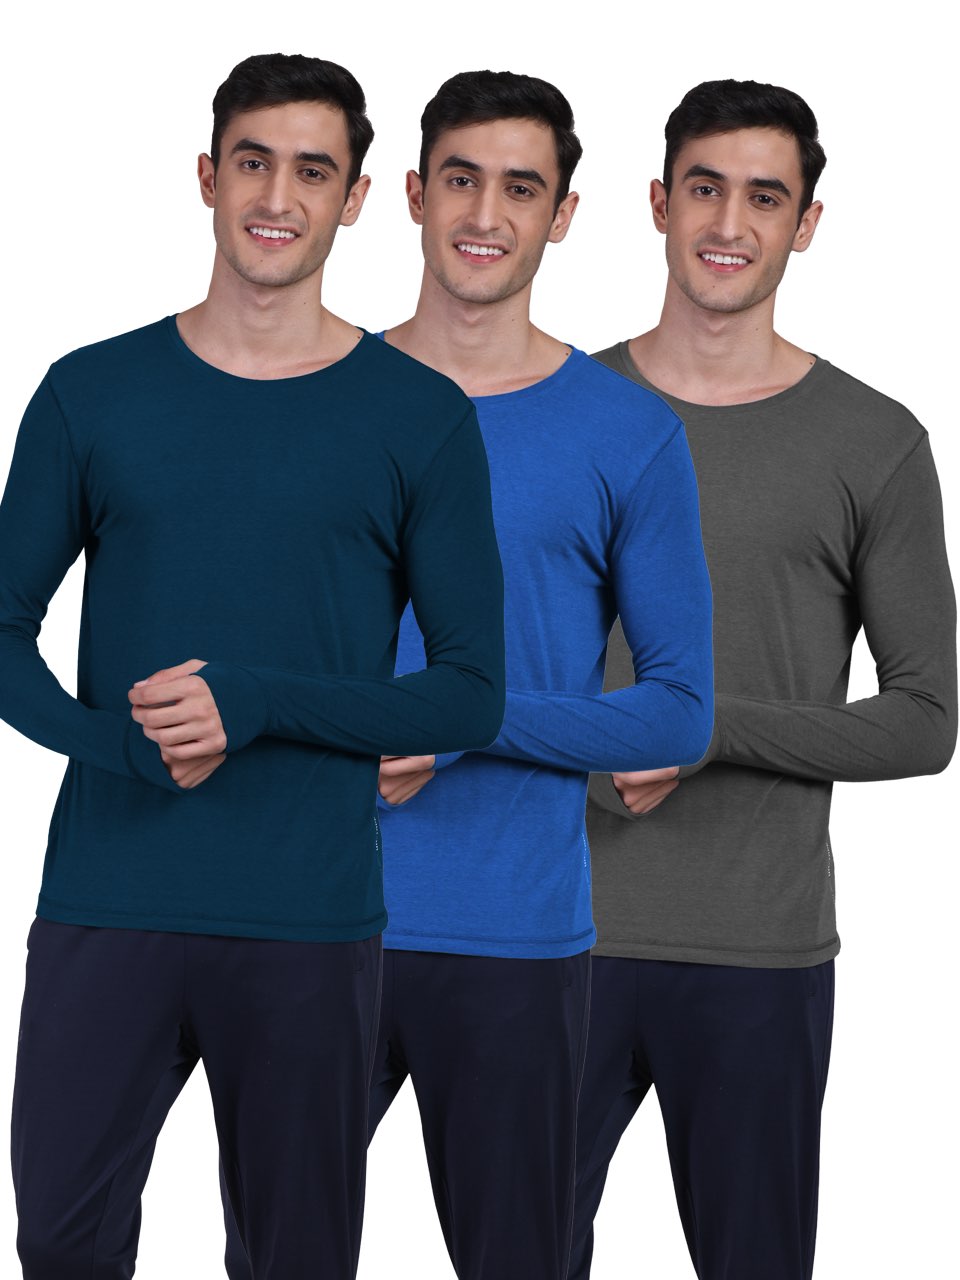 Men's Organic Bamboo Skins (Full Sleeves-Undershirt, Loungewear, Sleepwear) - Pack of 3